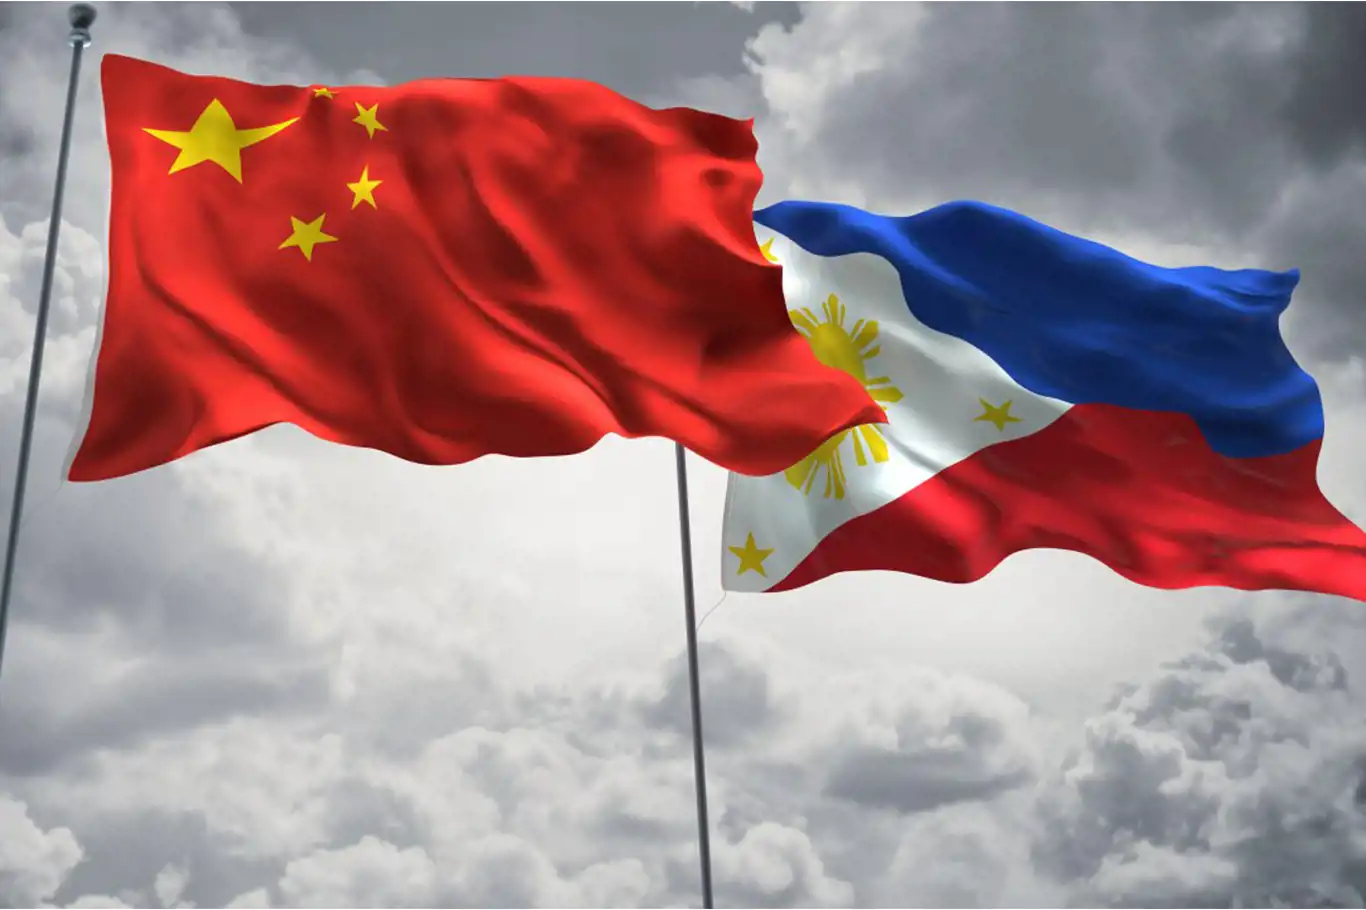 الفليبين والصين تتفقان على معالجة القضايا البحرية عبر الدبلوماسية والحوار